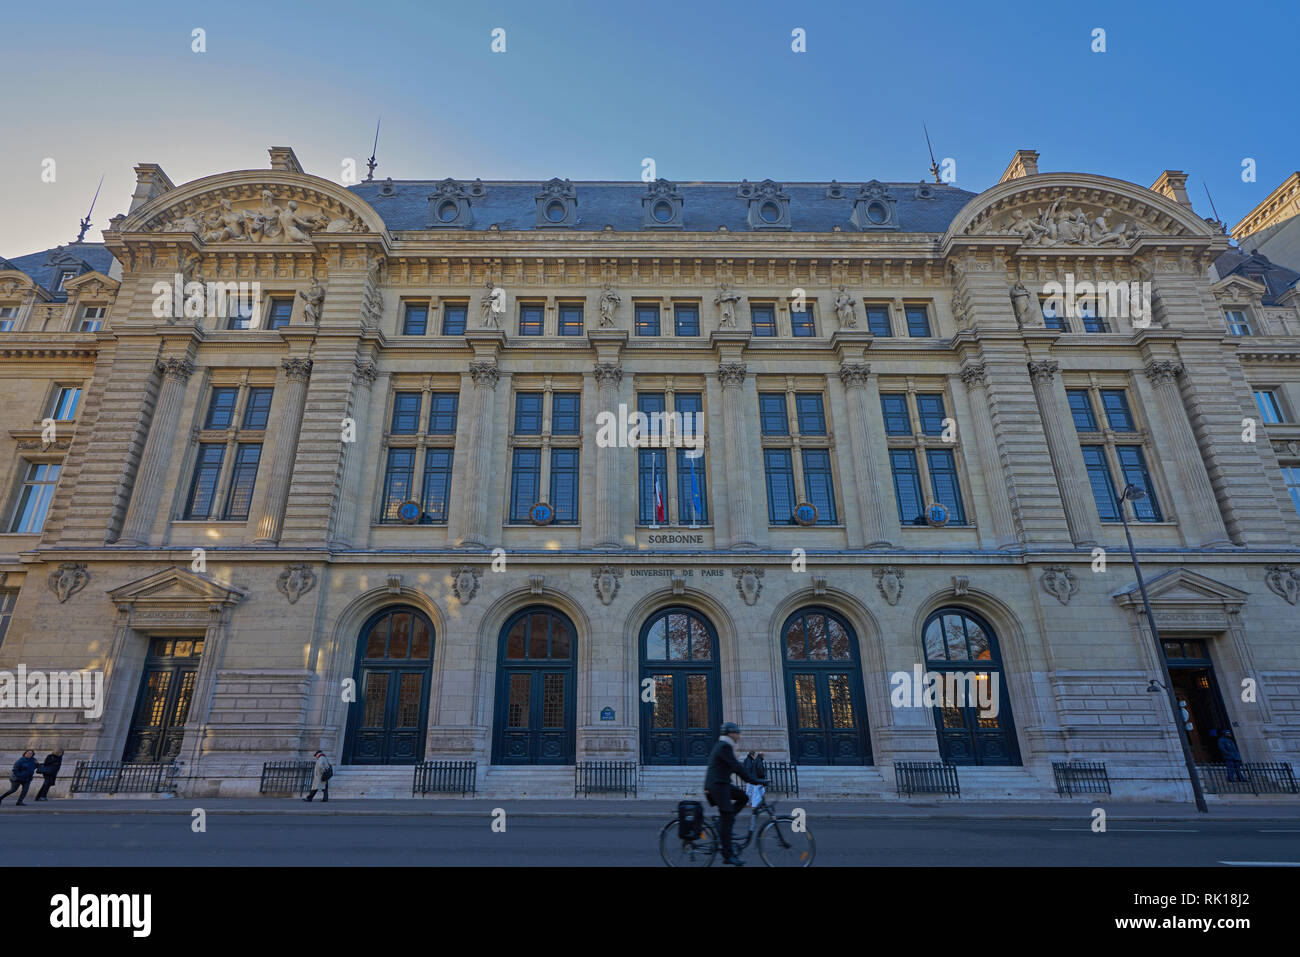 sorbonne university of paris Stock Photo